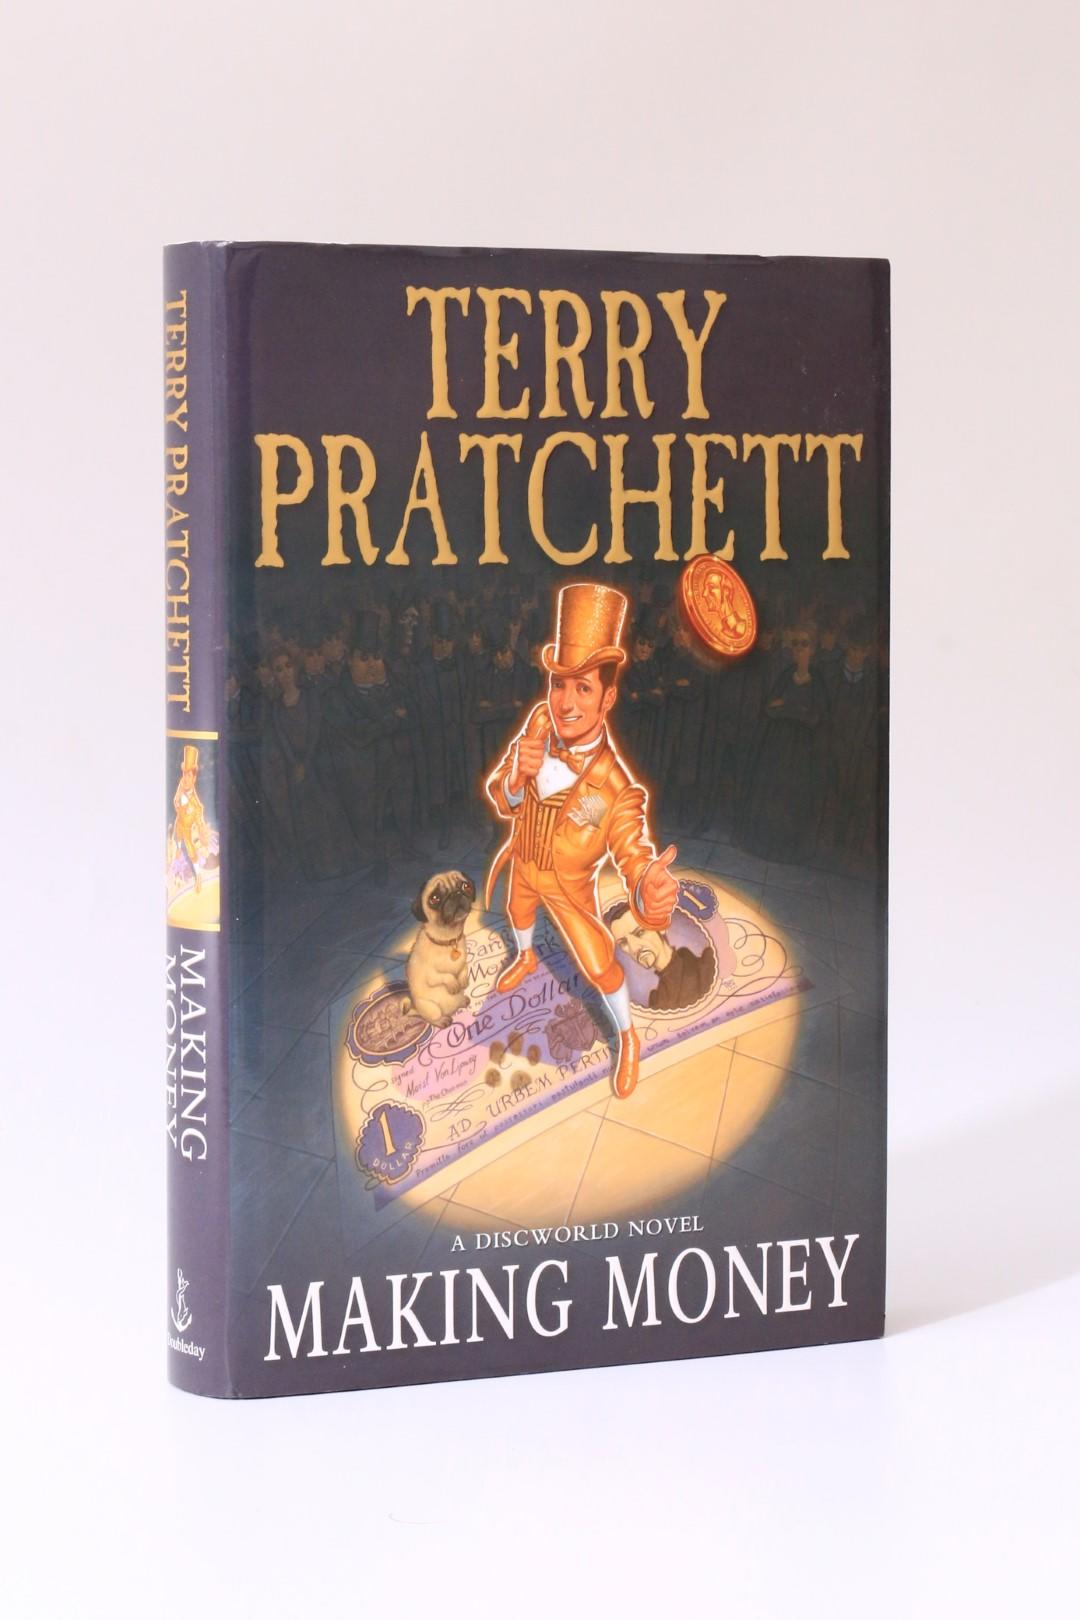 Terry Pratchett - Making Money - Doubleday, 2007, First Edition.